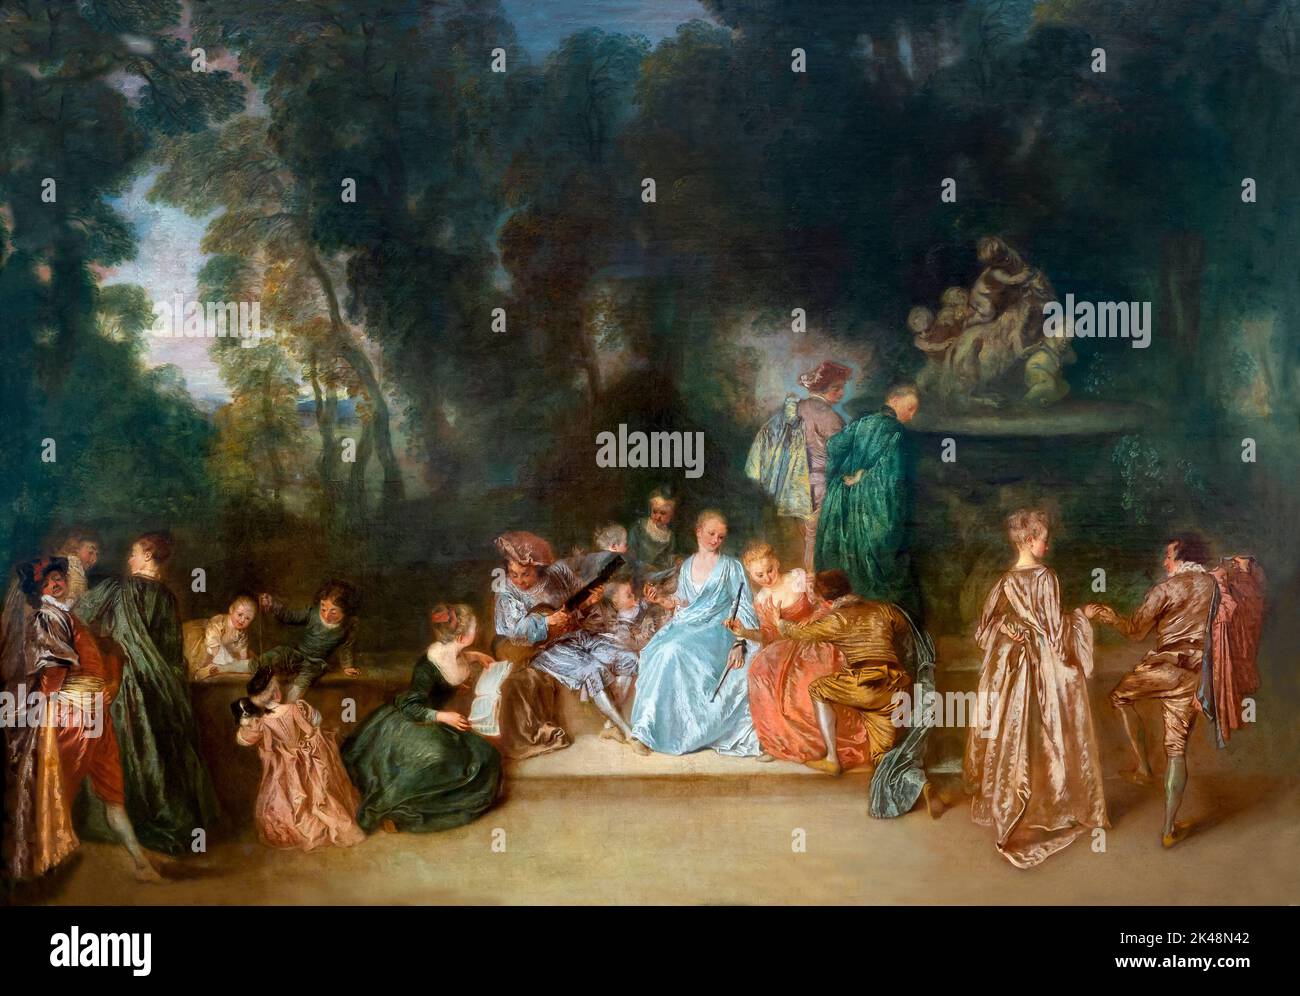 Compagnie en plein air, Jean Antoine Watteau, 1718-1721, Gemaldegalerie, Berlin, Allemagne, Europe Banque D'Images